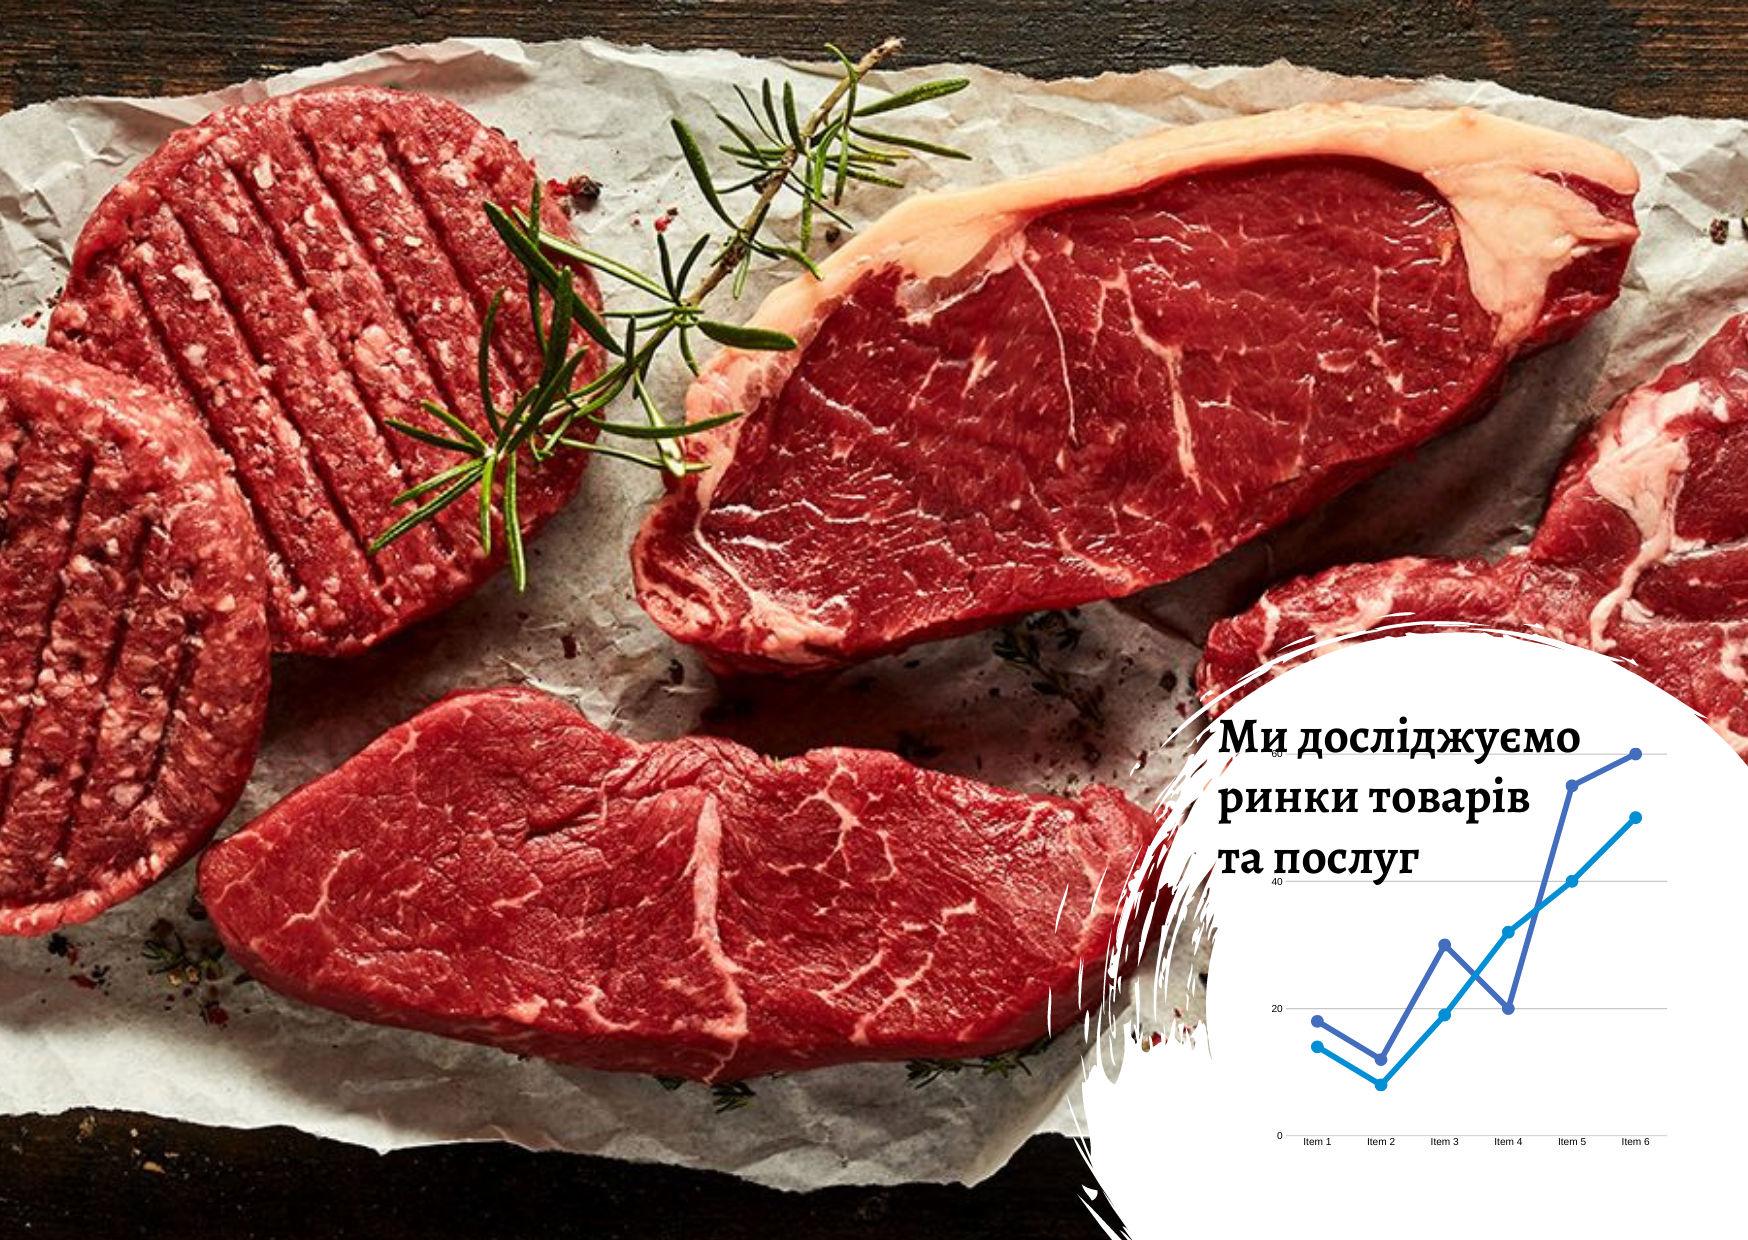 Ukrainian meat market – research